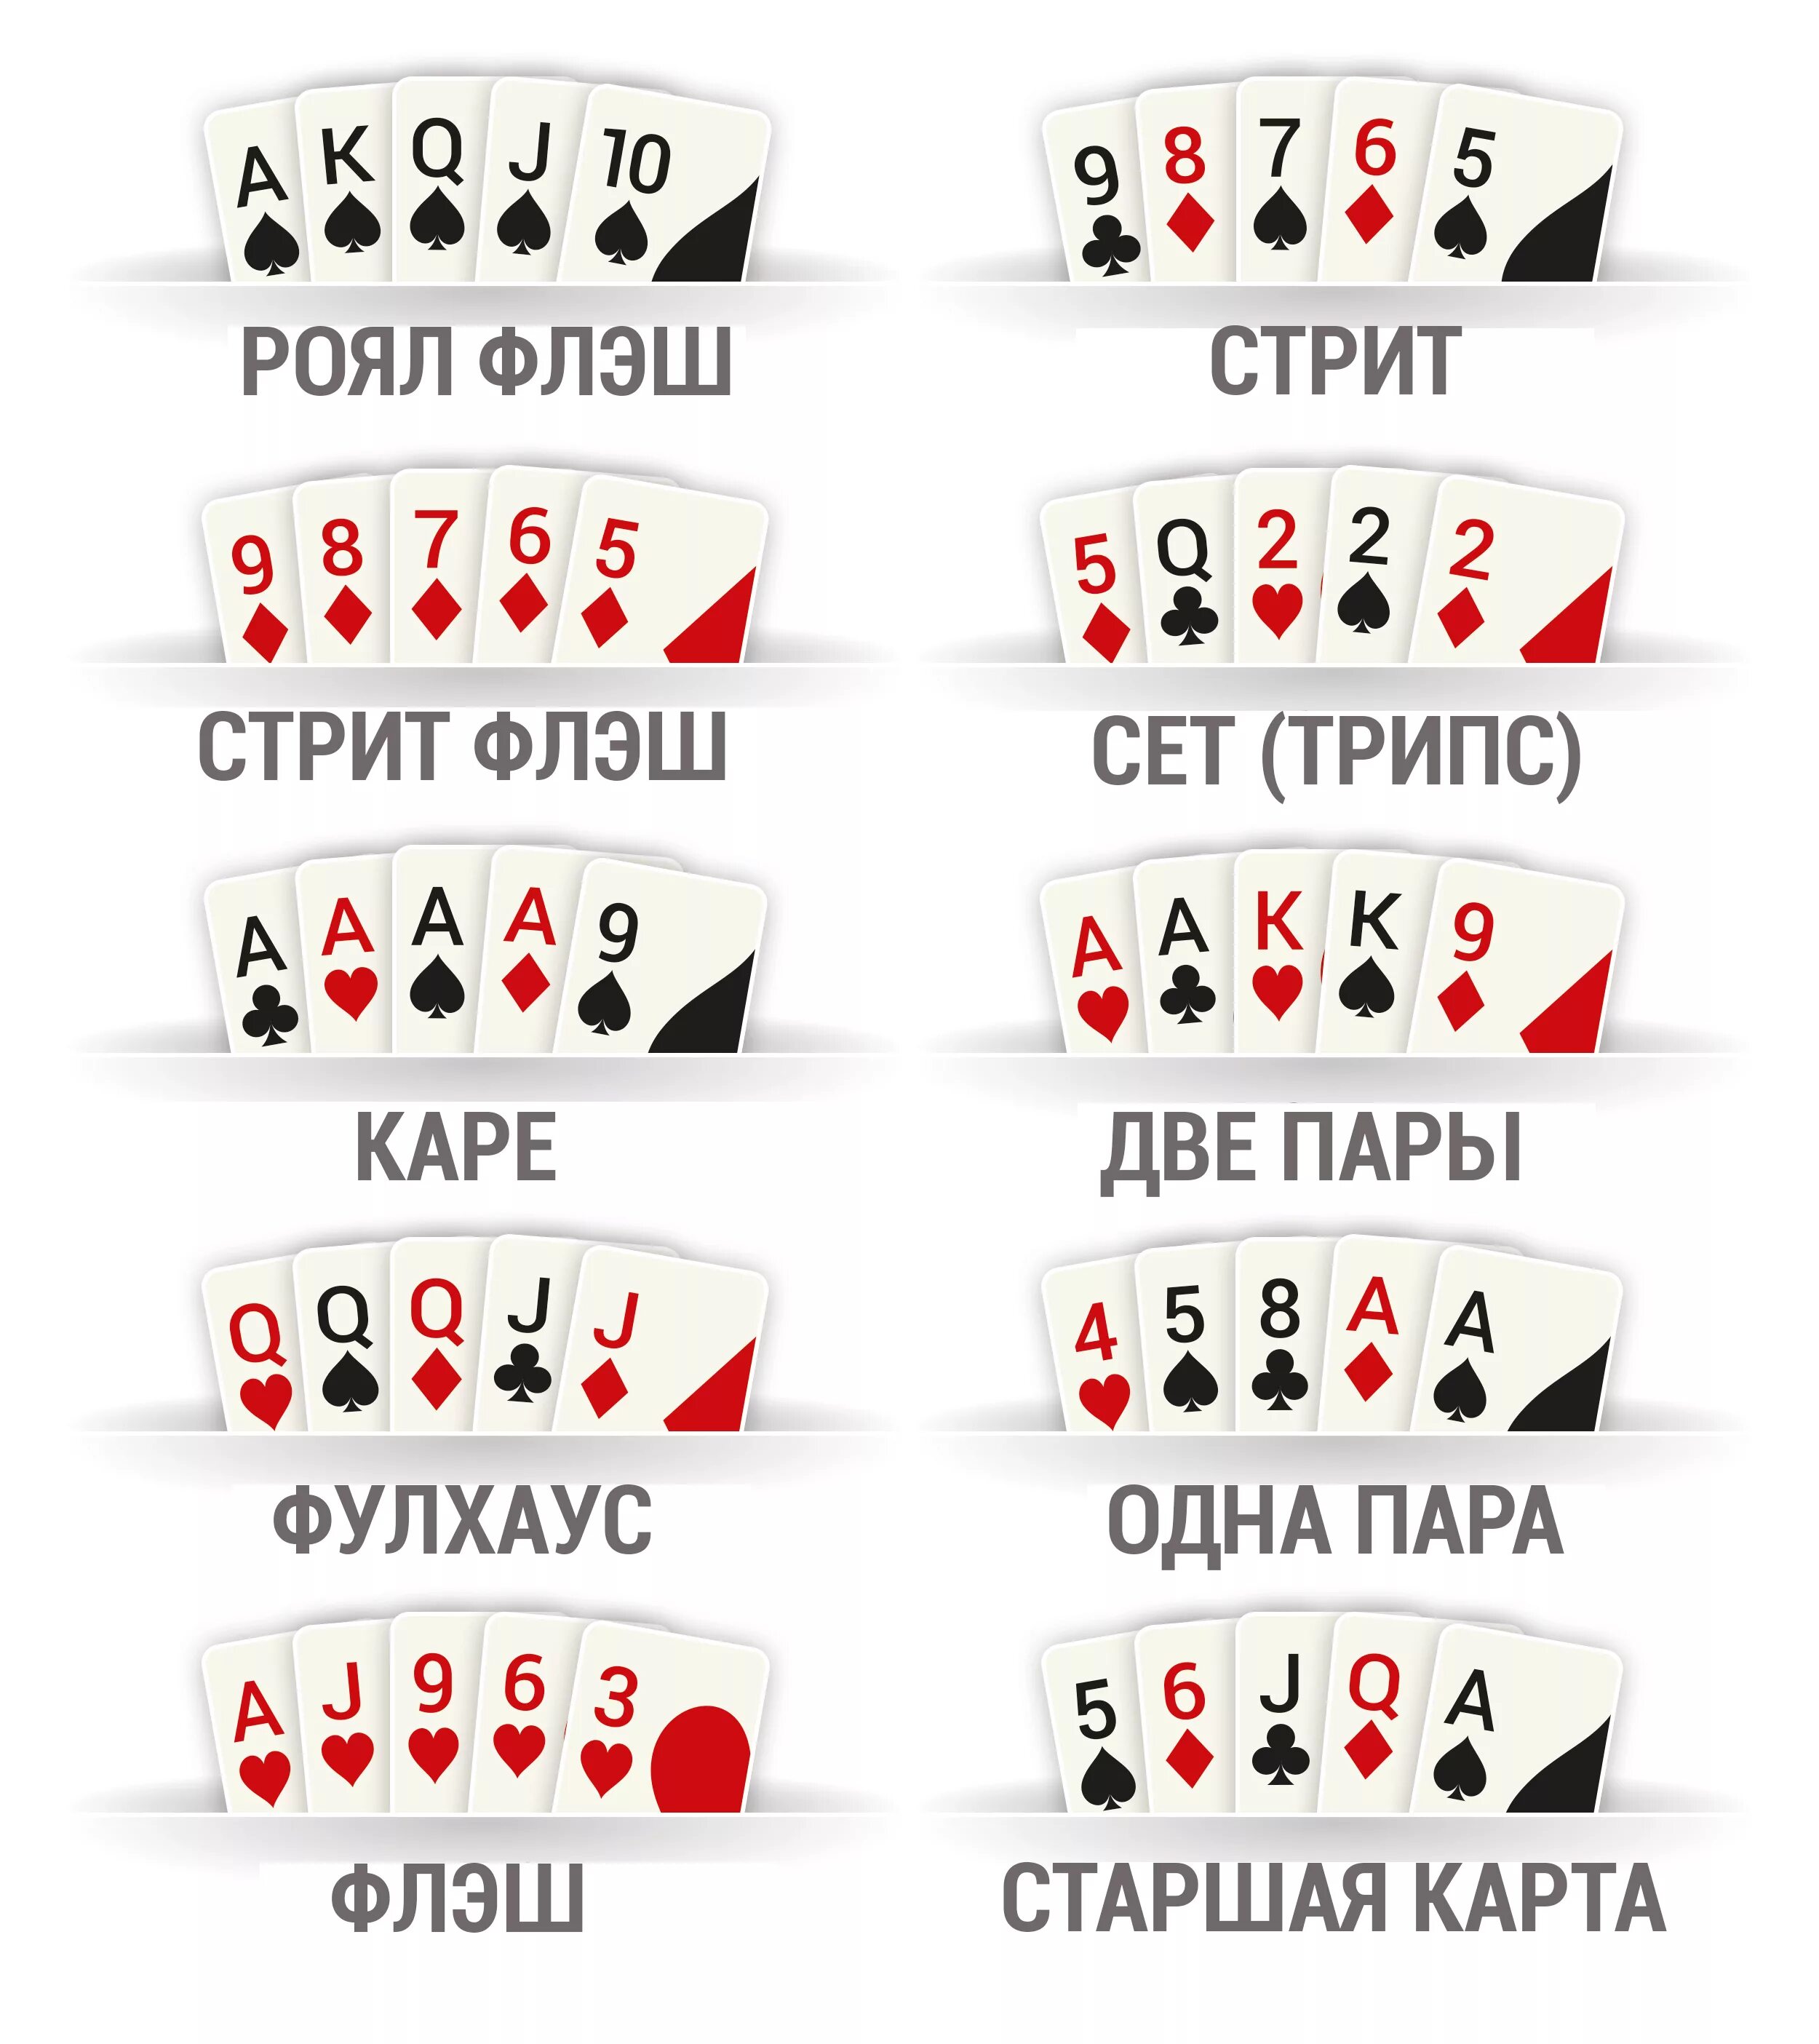 Раскладка покера картинки комбинации. Покер комбинации карт. Порядок комбинаций в покере. Комбинации карт в покере Техасский холдем. Покер комбинации Техасский Холдинг.